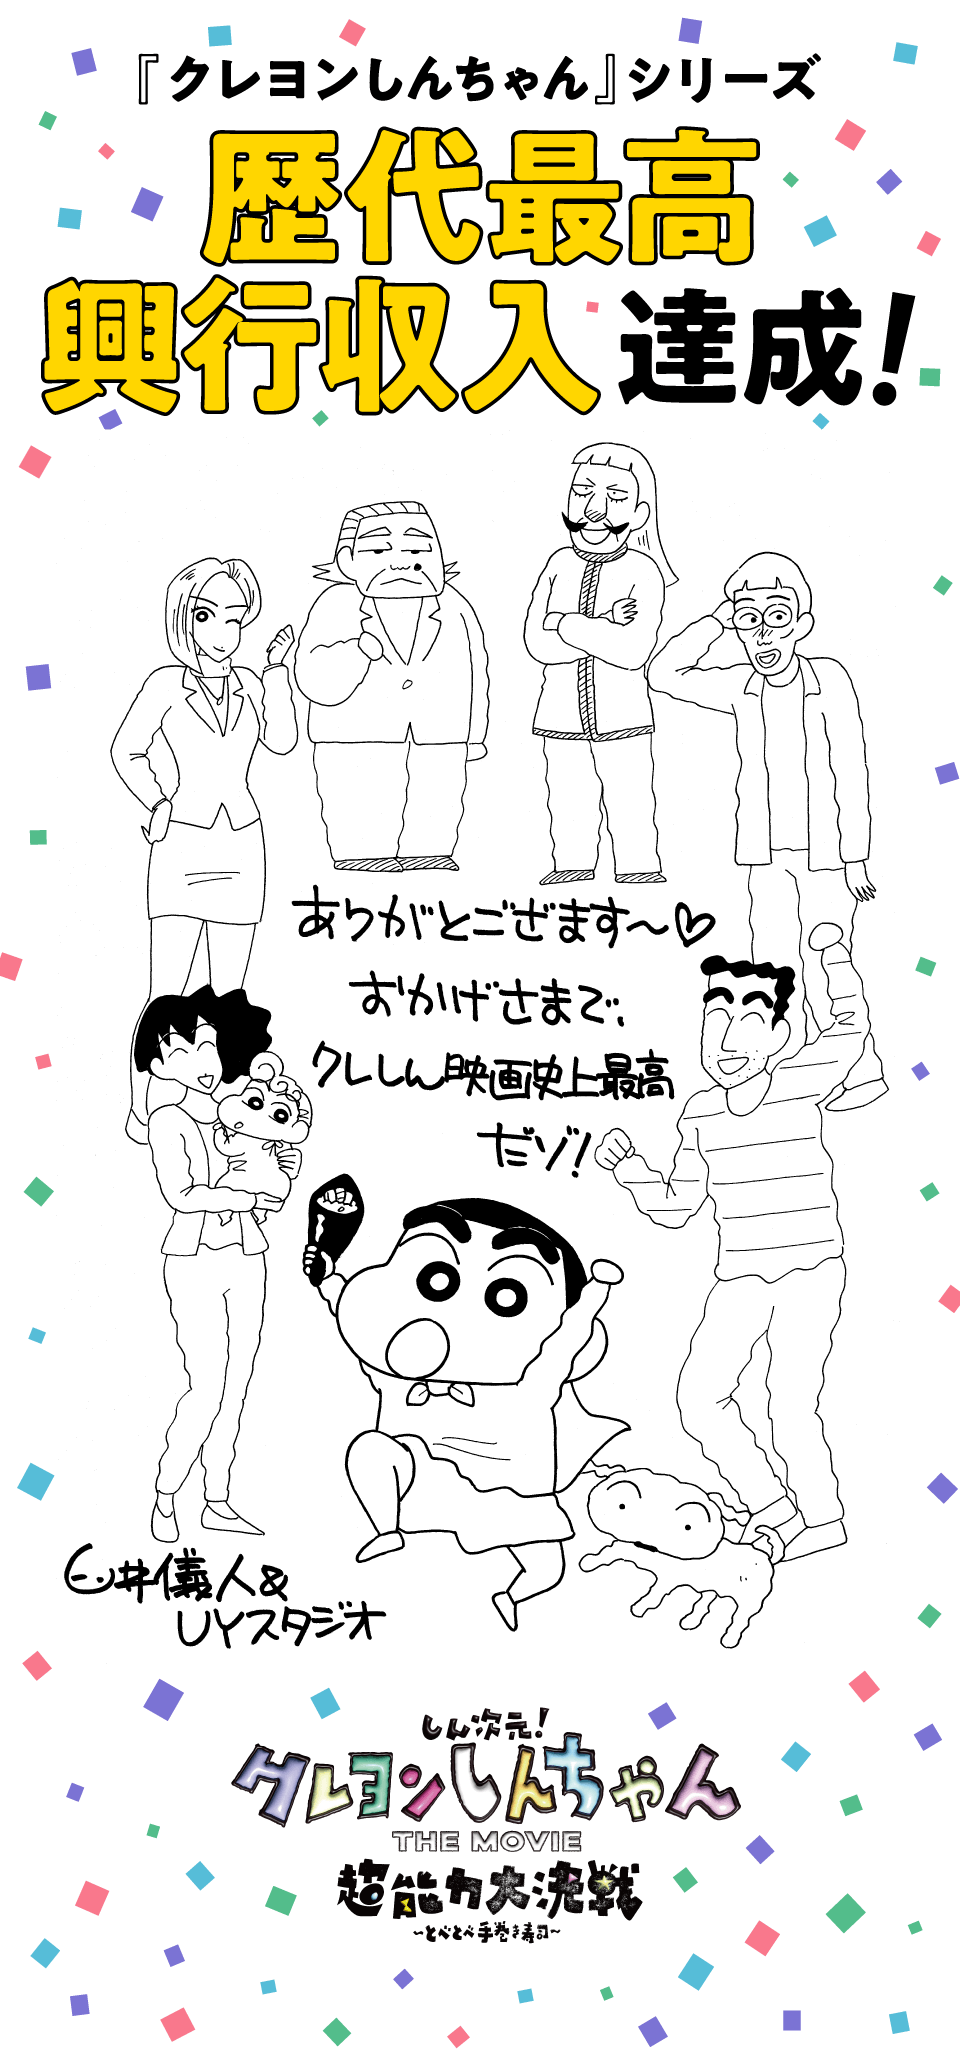 『クレヨンしんちゃん』シリーズ歴代最高興行収入達成！